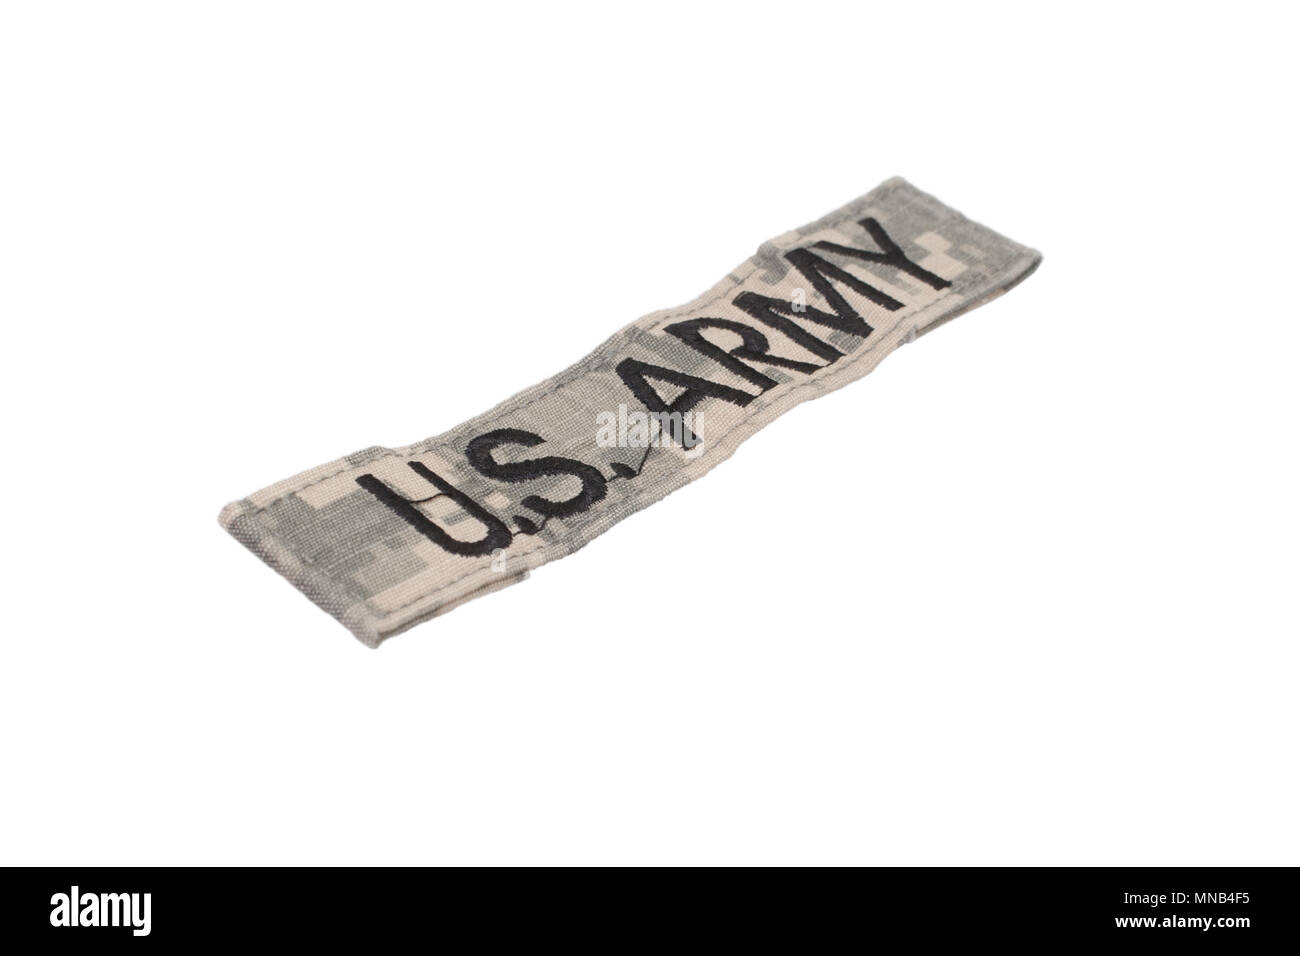 US ARMY ACU uniform badge isolated on white background Stock Photo